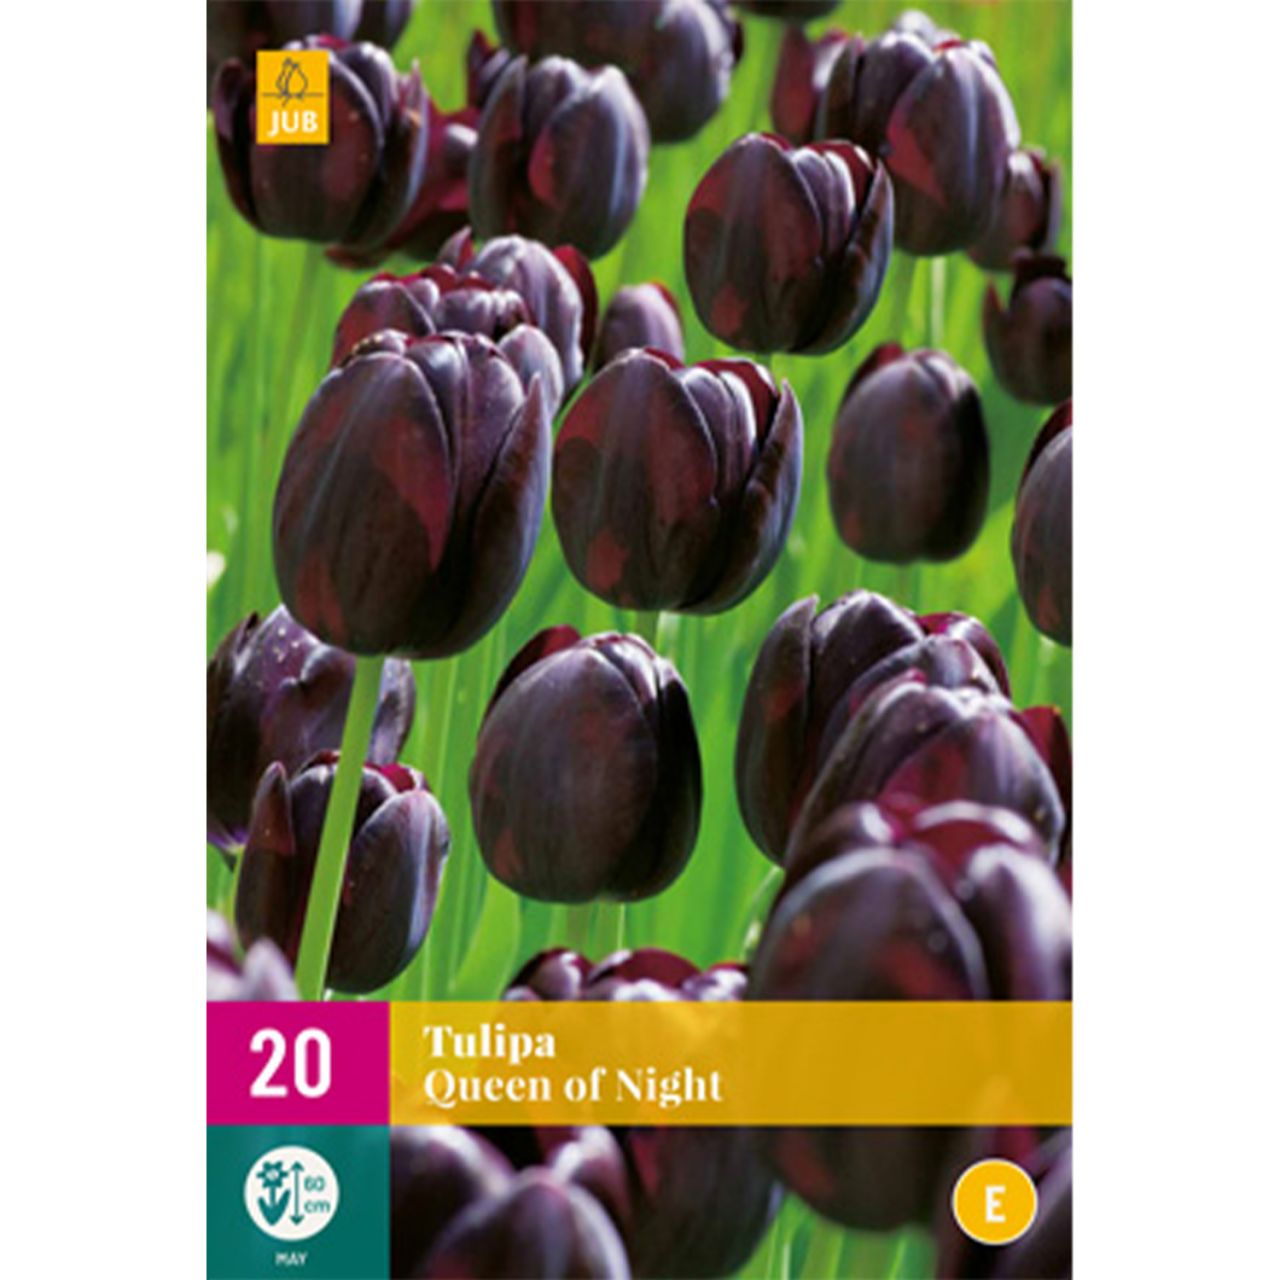 Kategorie <b>Herbst-Blumenzwiebeln </b> - Einfache späte Tulpe 'Queen of Night' - 20 Stück - Tulipa 'Queen of Night'